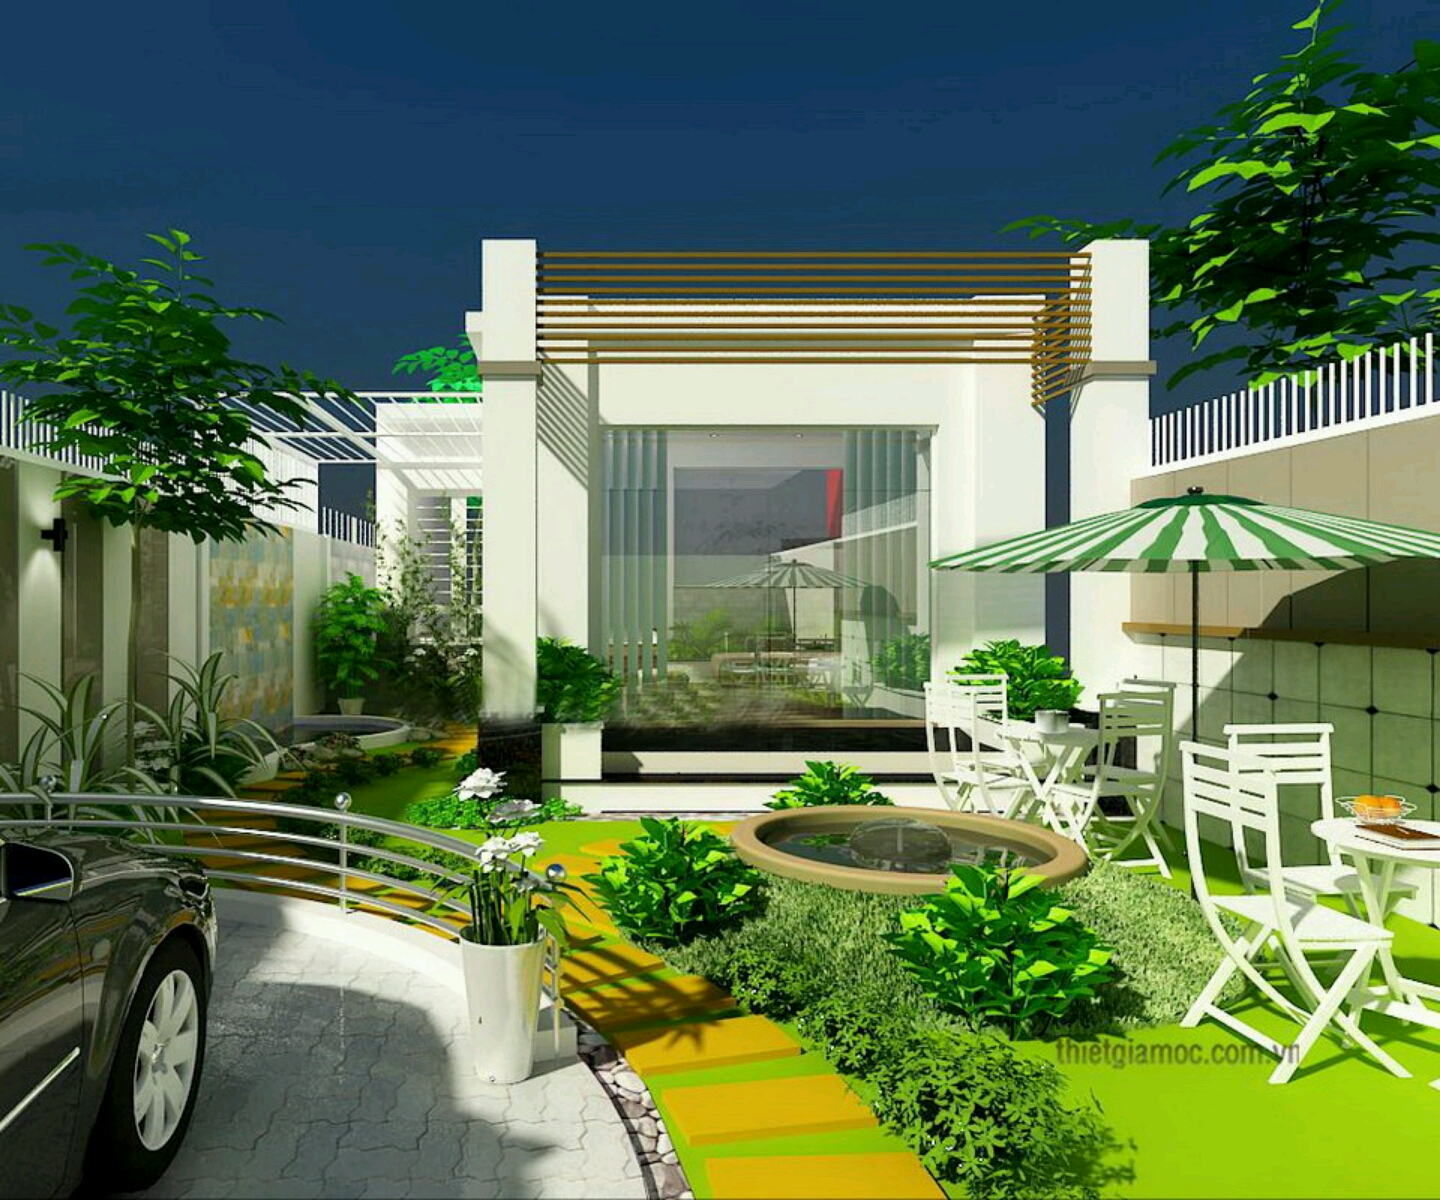 Modern homes beautiful garden designs ideas. | New home ...